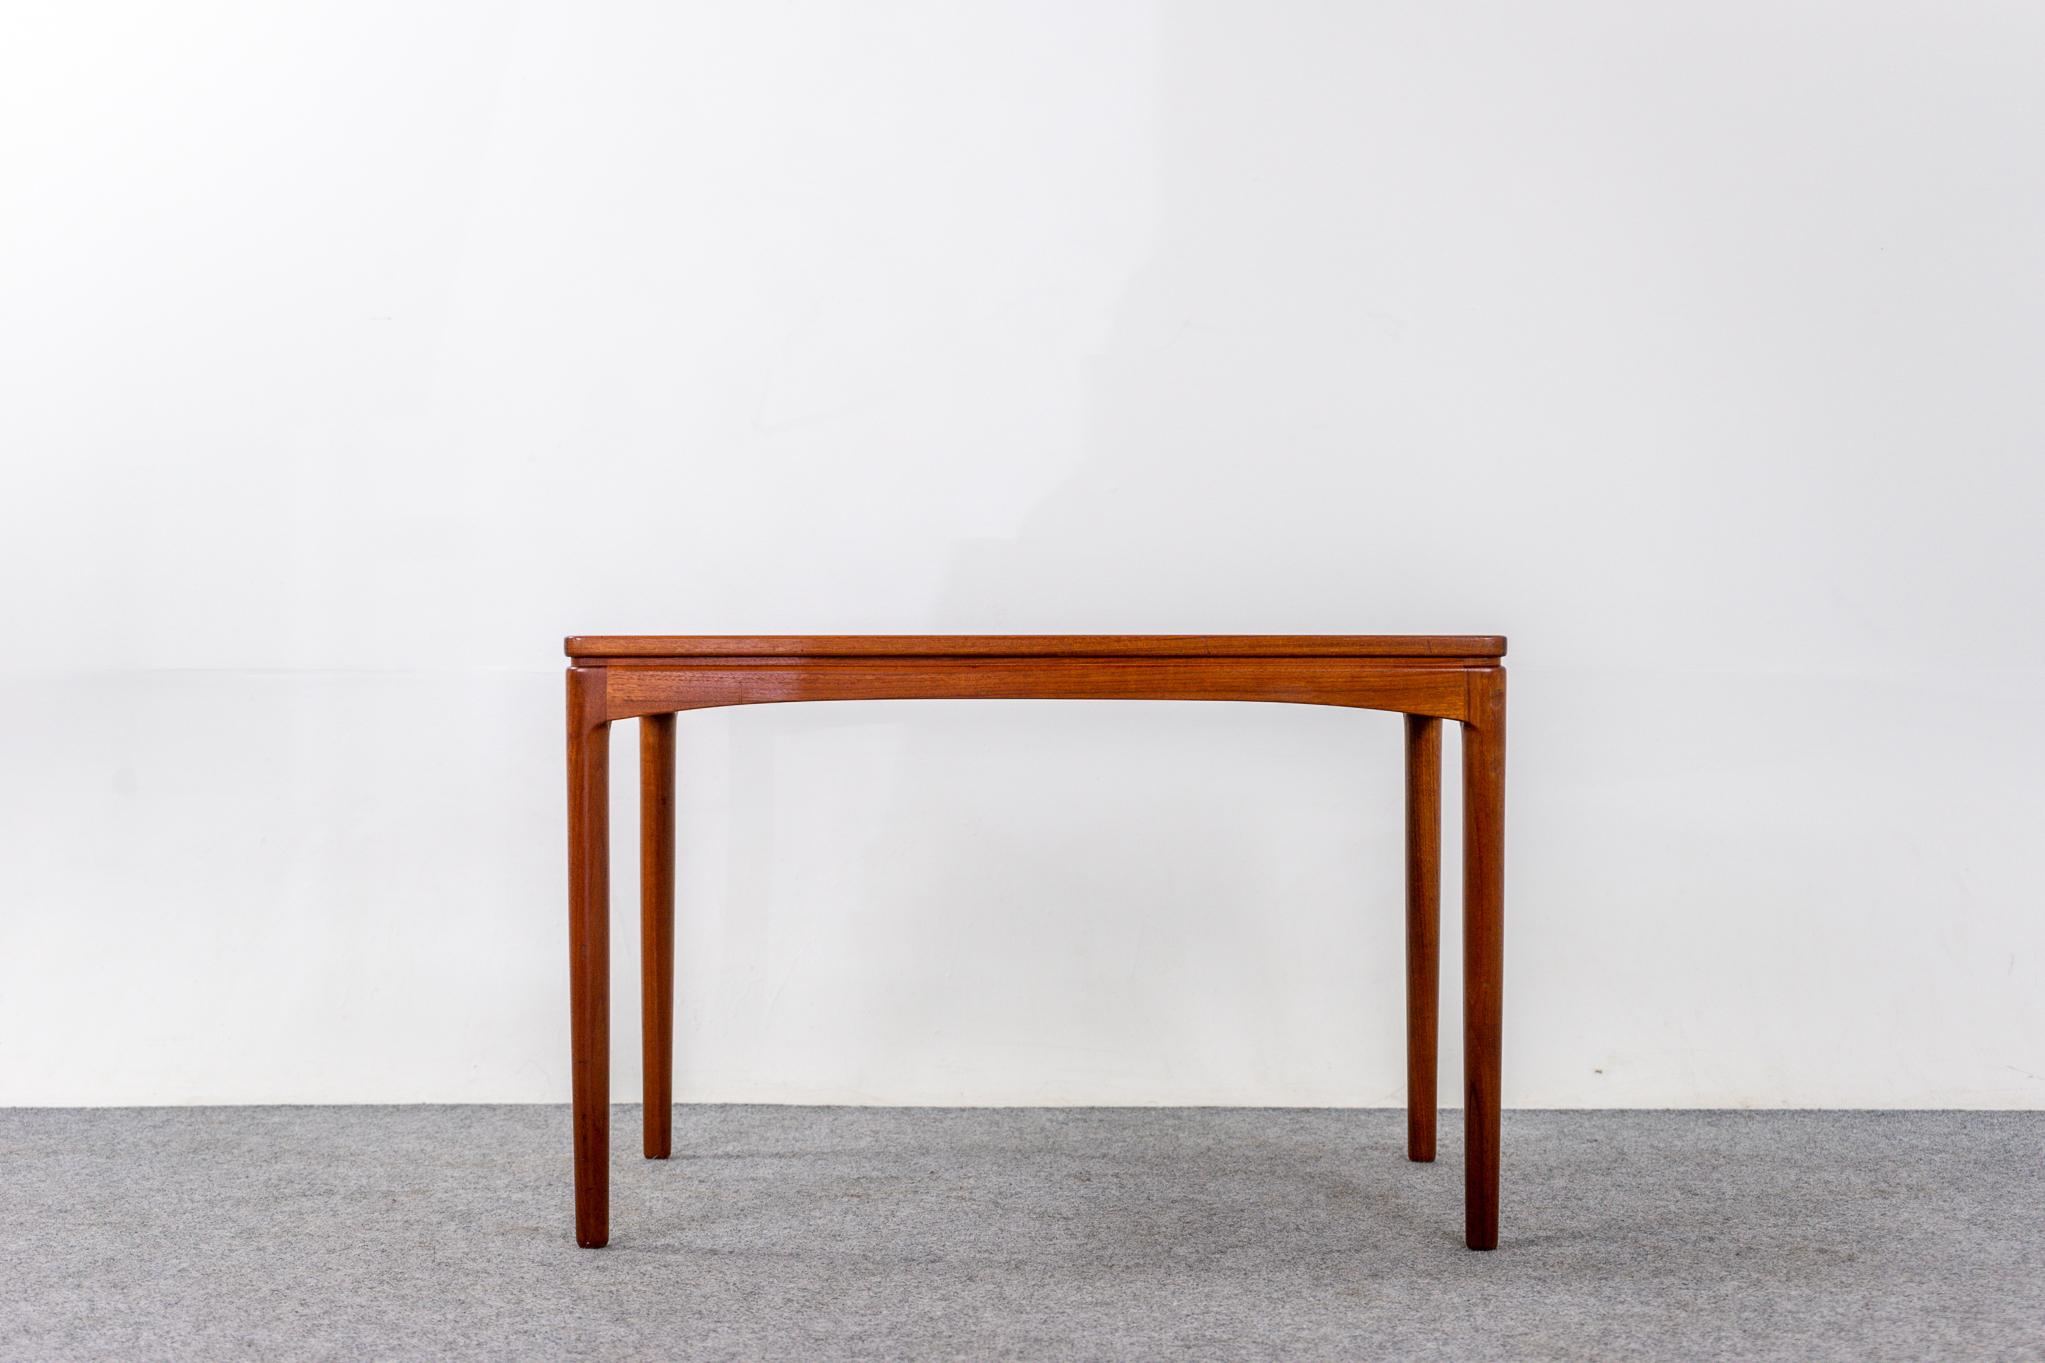 Table d'appoint danoise en teck, vers les années 1960. La base est en bois massif et les surfaces planes sont recouvertes d'un beau placage assorti au livre. Compacte et très fonctionnelle, cette table s'adapte parfaitement aux causeuses ou à tout